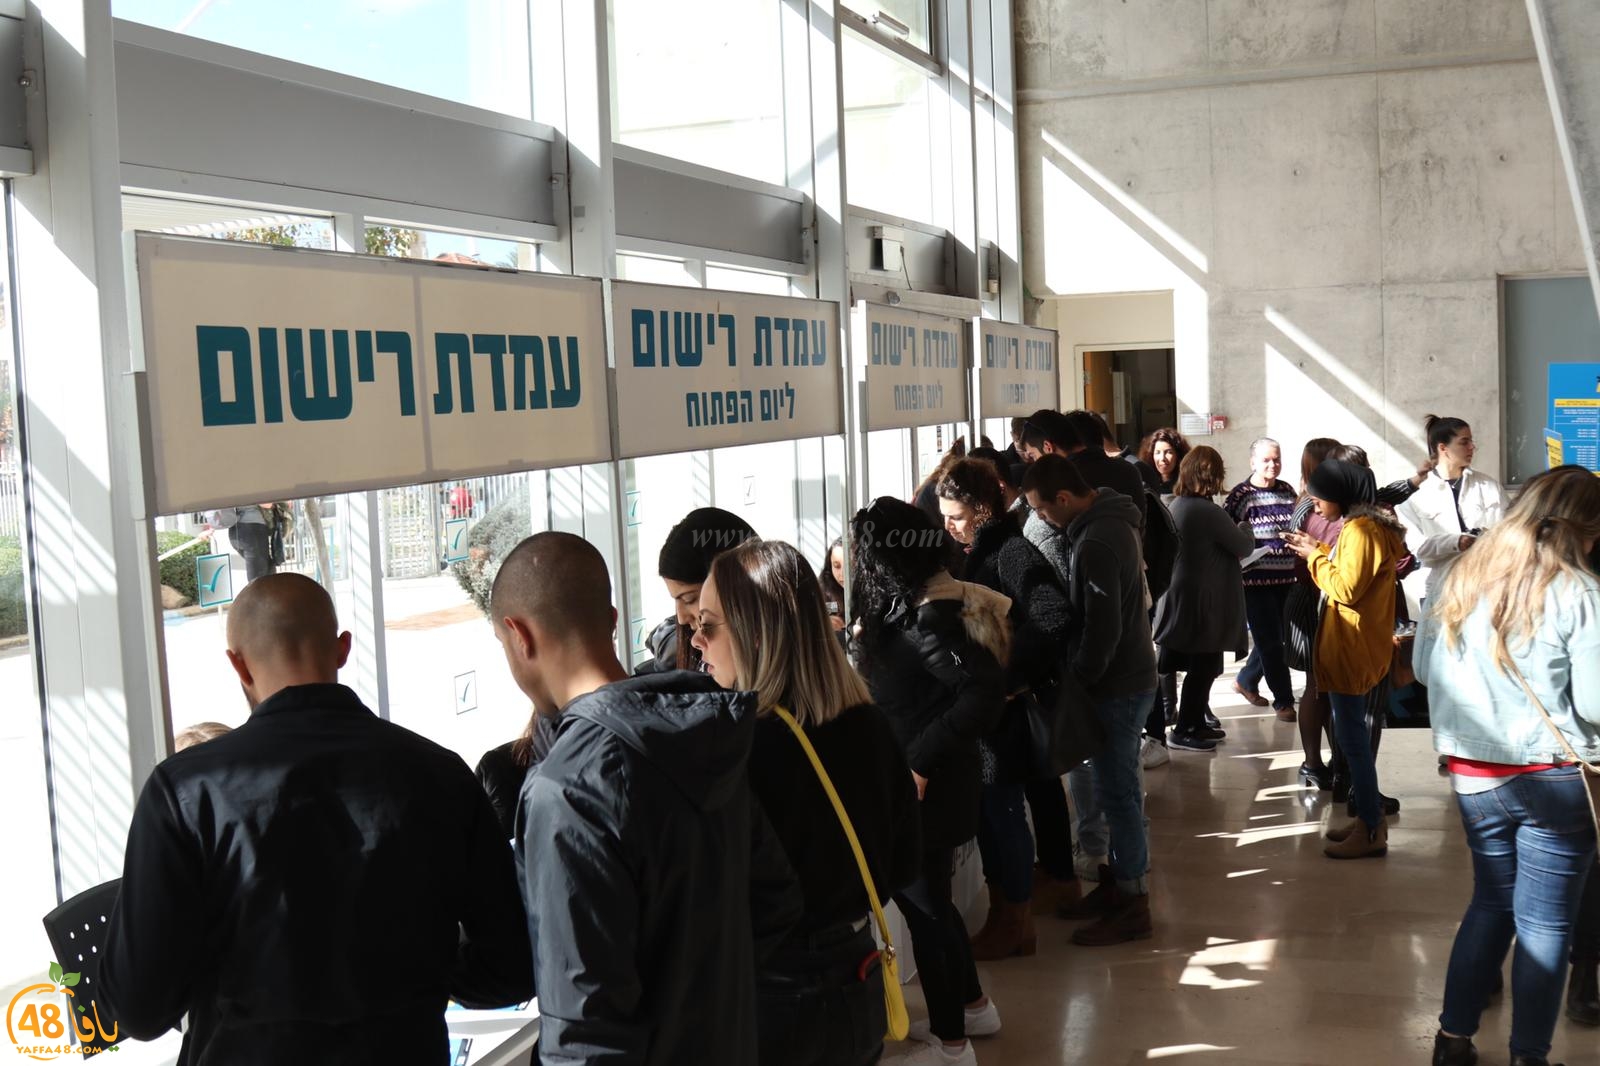  بالصور: الكلية الأكاديمية تل ابيب يافا تُنظم يوماً مفتوحاً 